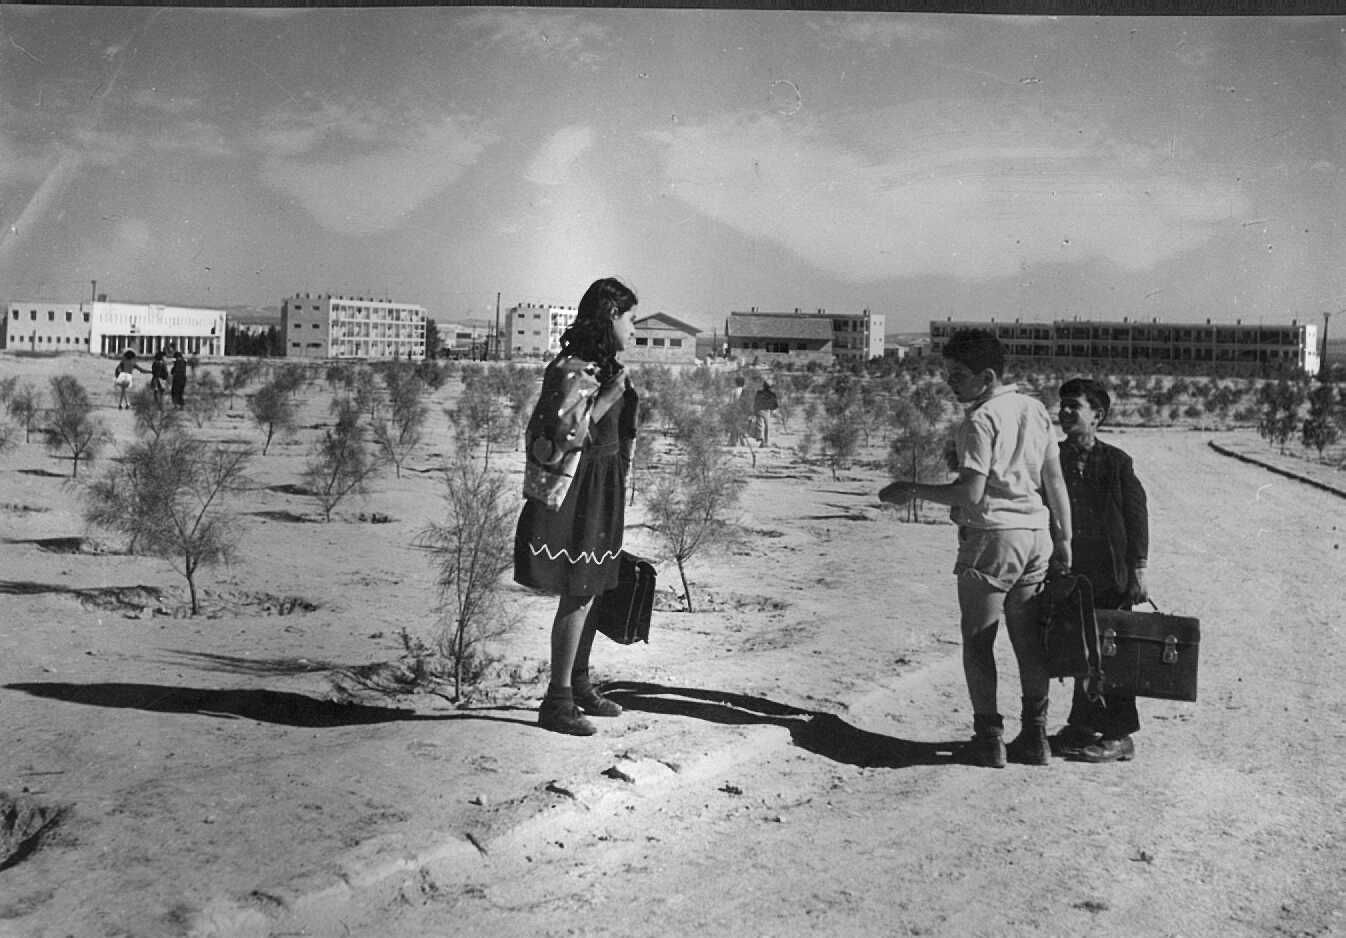 ילדים בדרך הביתה מספריית הילדים בבאר שבע, 1956 צלם זולטן קלוגר, באדיבות הארכיון הציוני המרכז